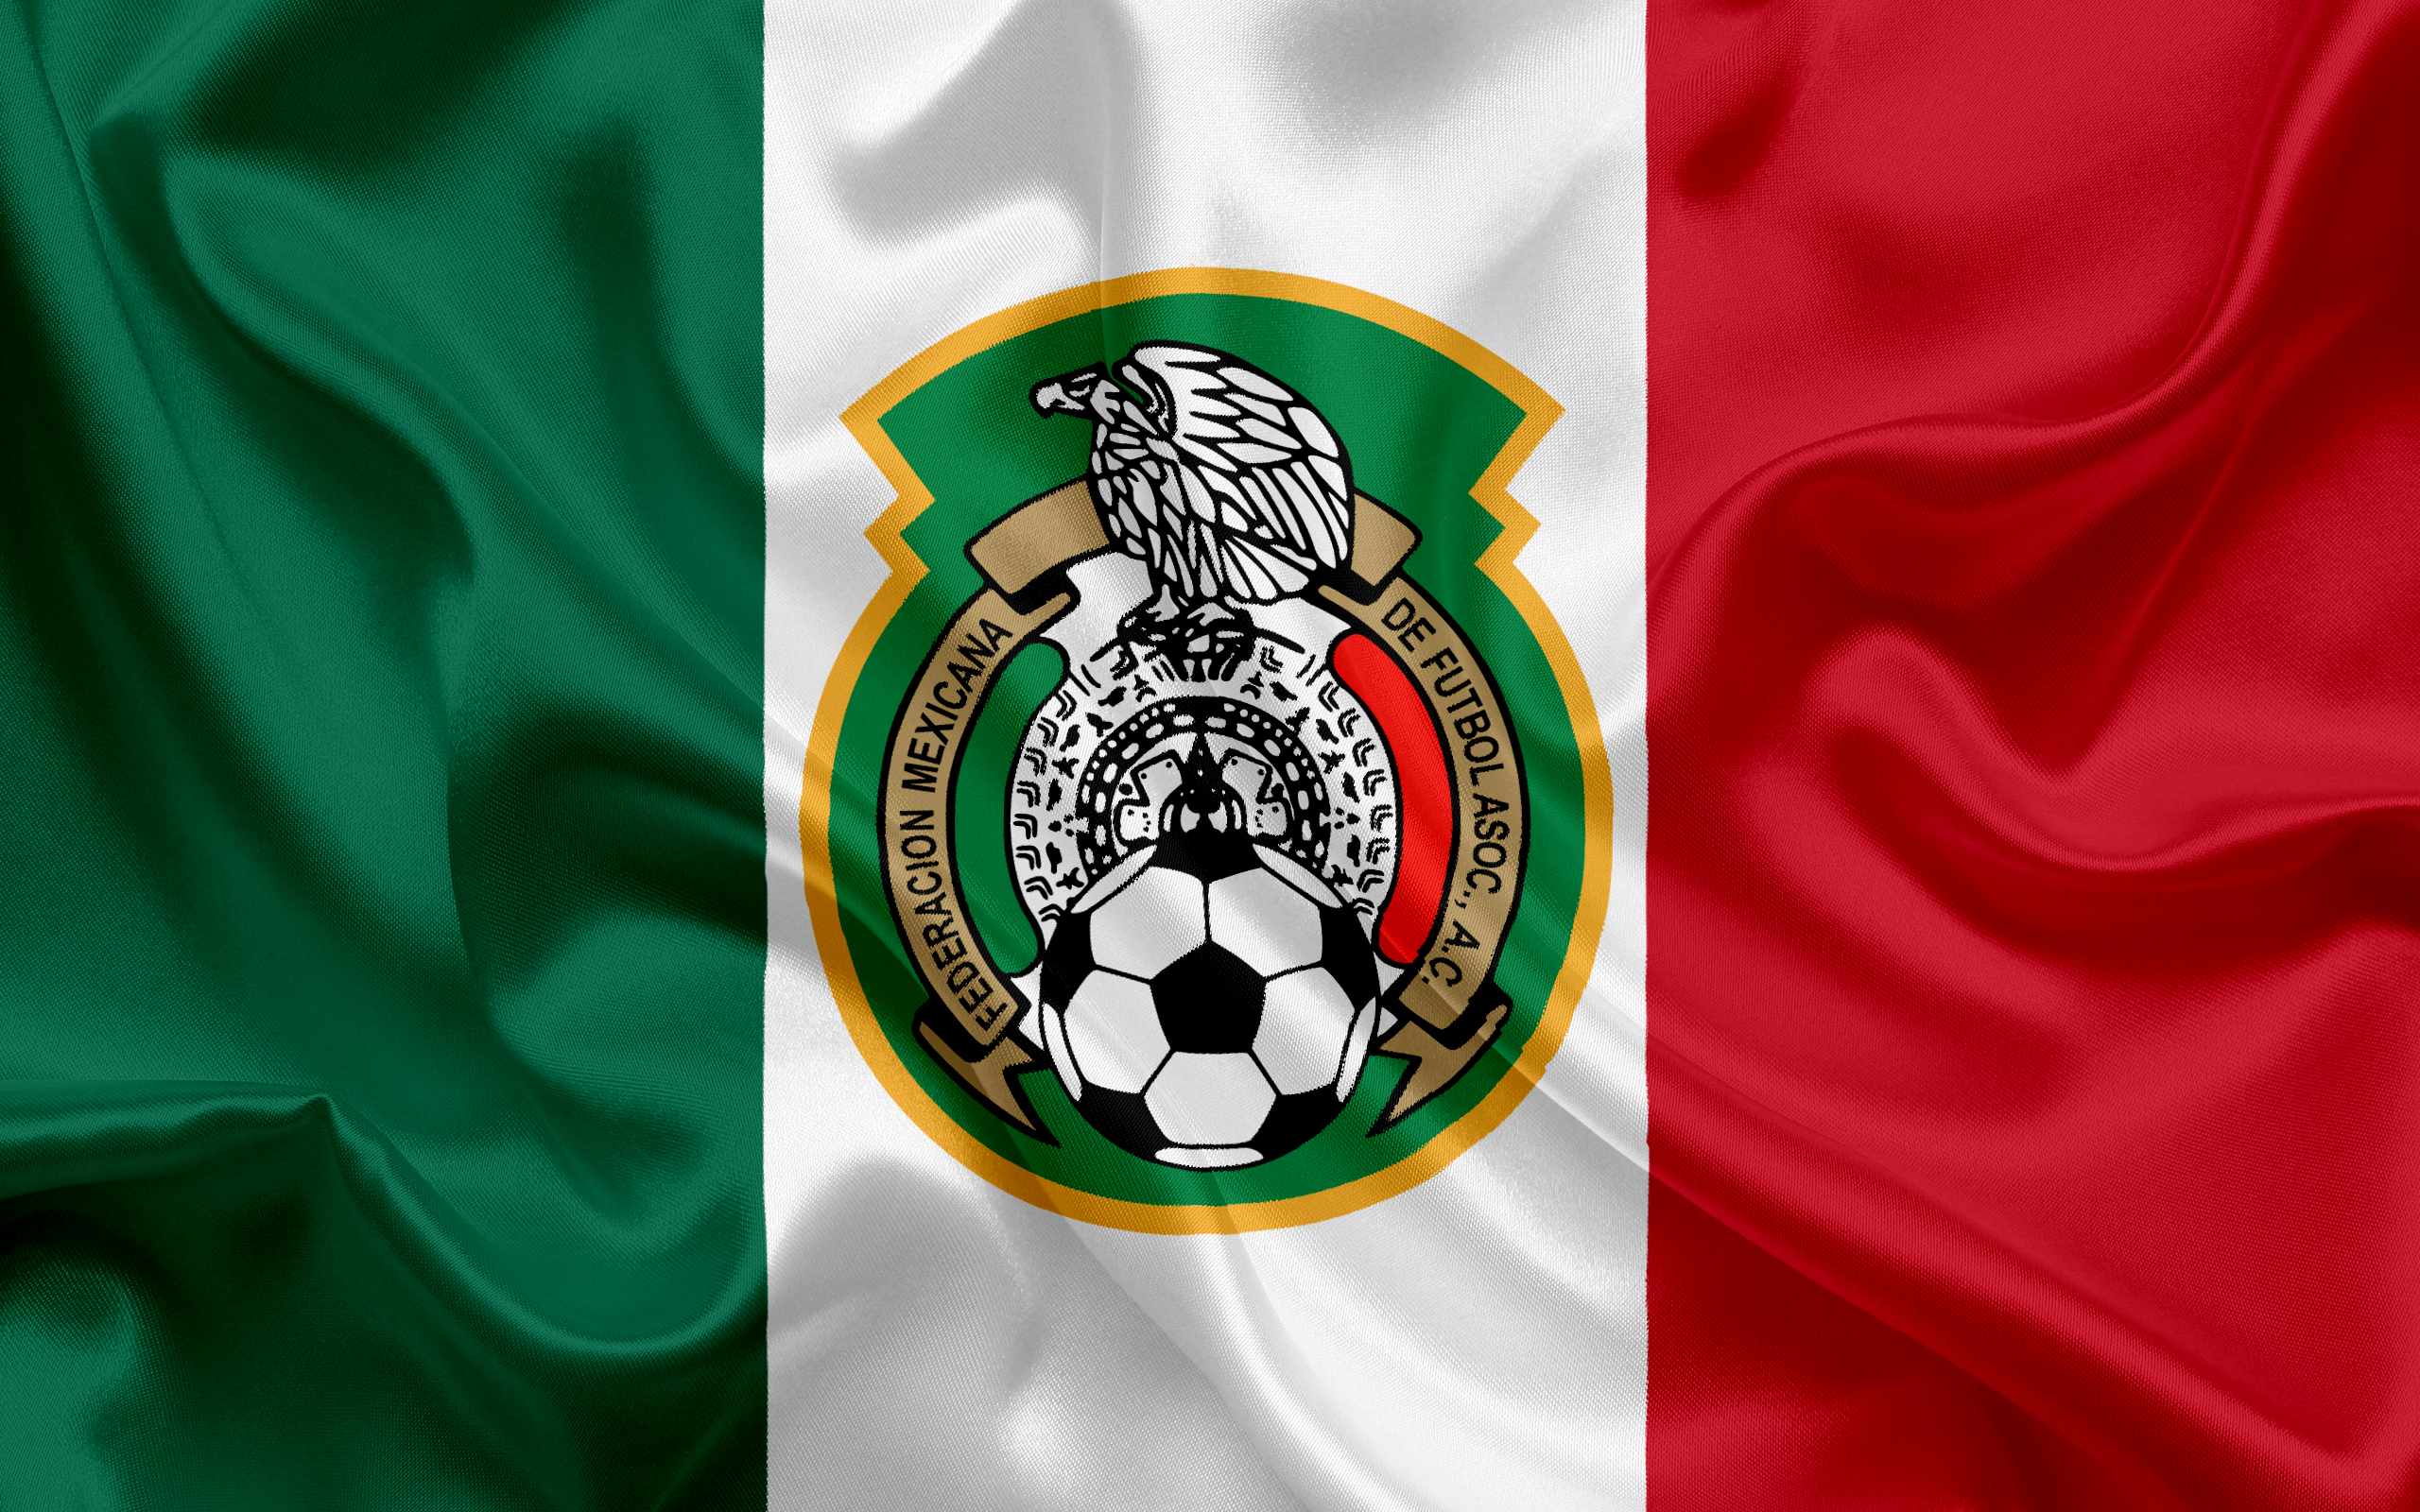 Скачать обои Сборная Мексики По Футболу на телефон бесплатно